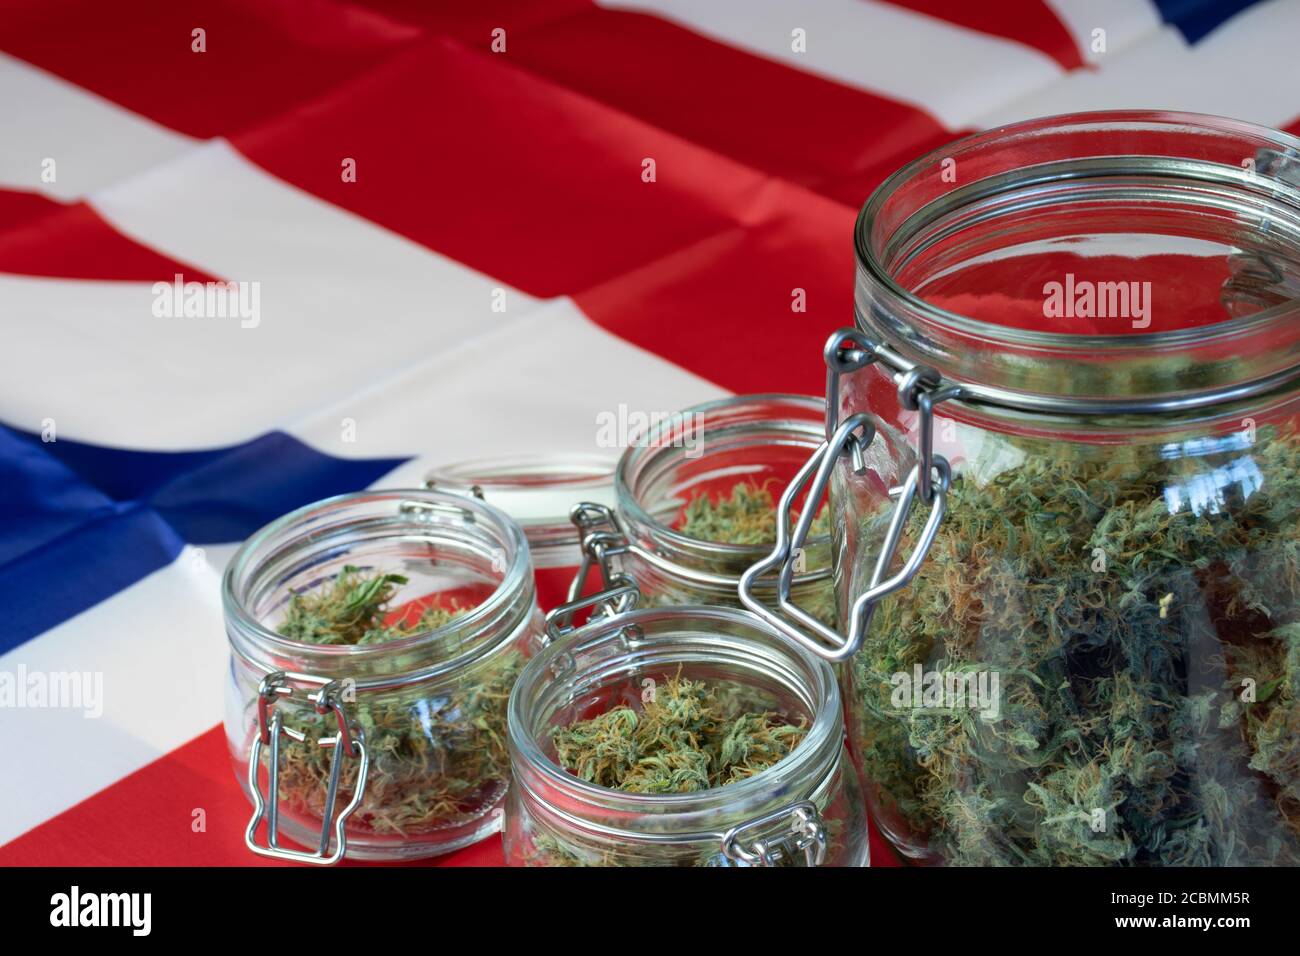 Offene Gläser mit Marihuana-Knospen auf dem Hintergrund mit der britischen Nationalflagge. Vereinigtes Königreich und Cannabisgeschäft Stockfoto